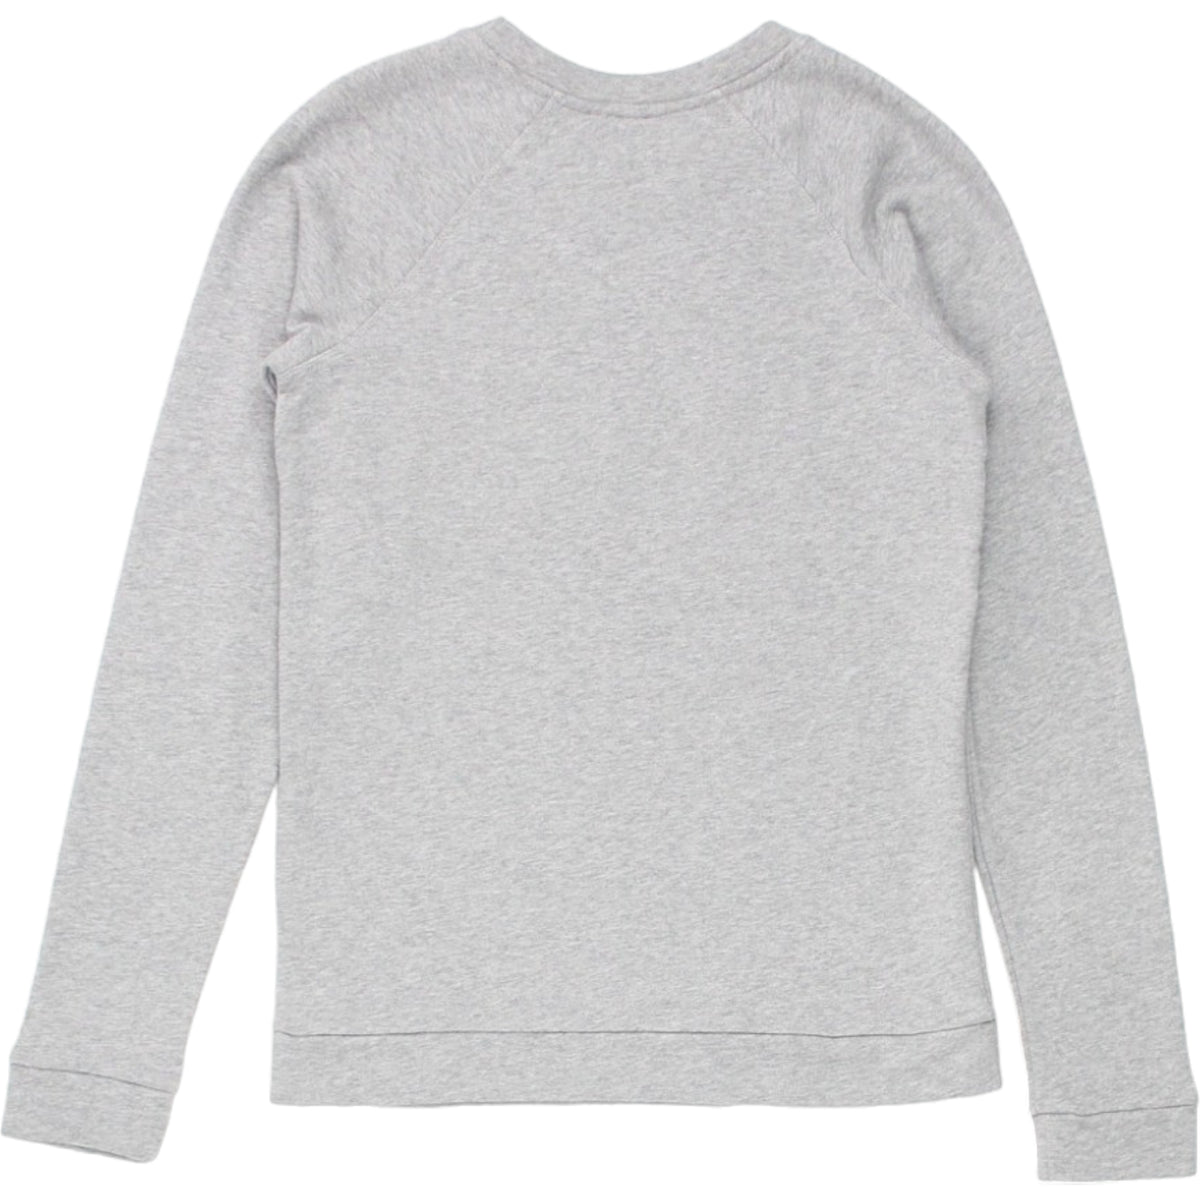 Bella Freud Grey Dance Sweatshirt